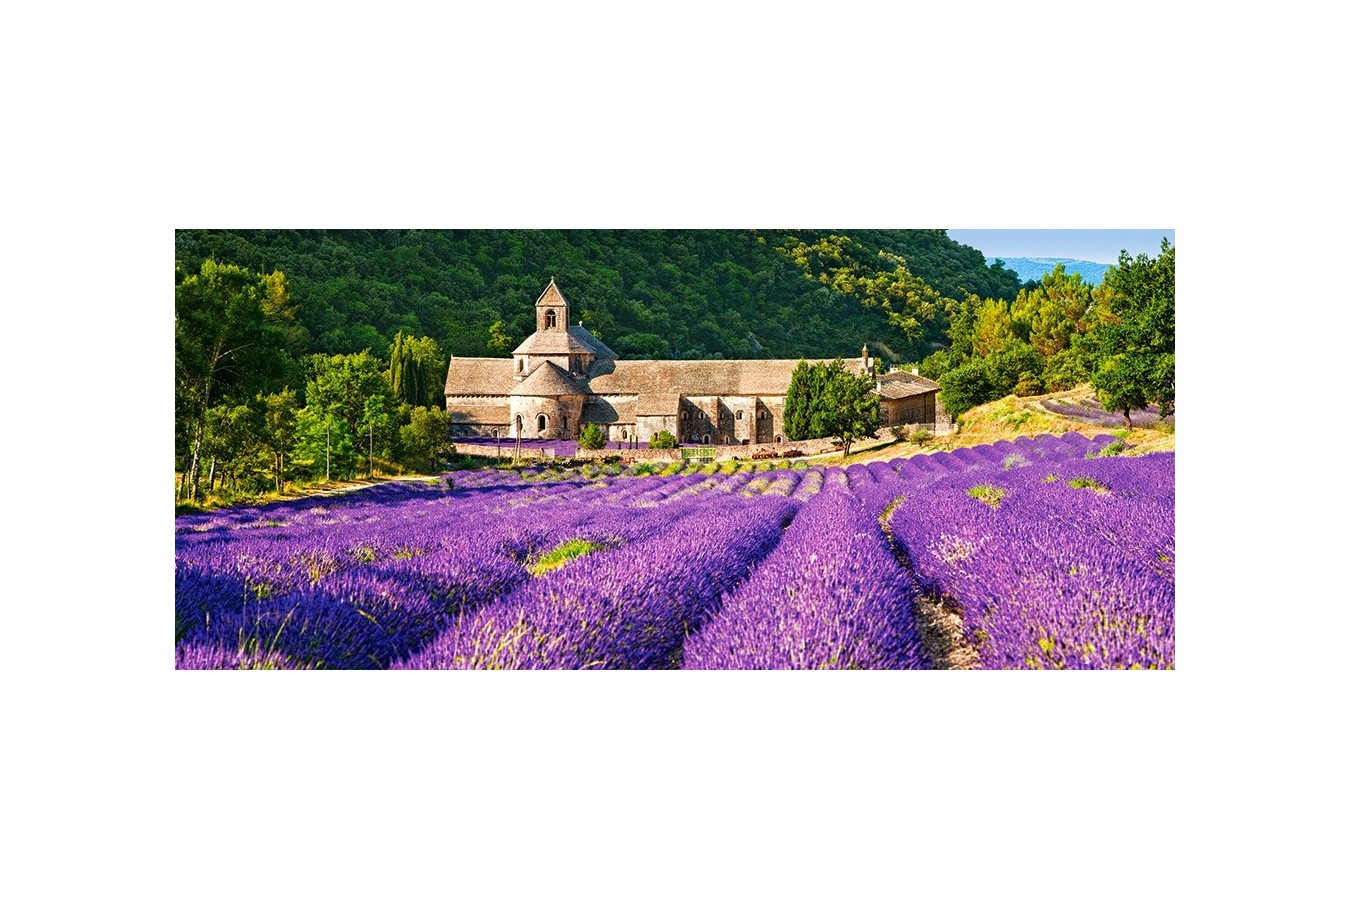 Puzzle panoramic Castorland - Notre Dame De Senanque , France, 600 piese (60313)